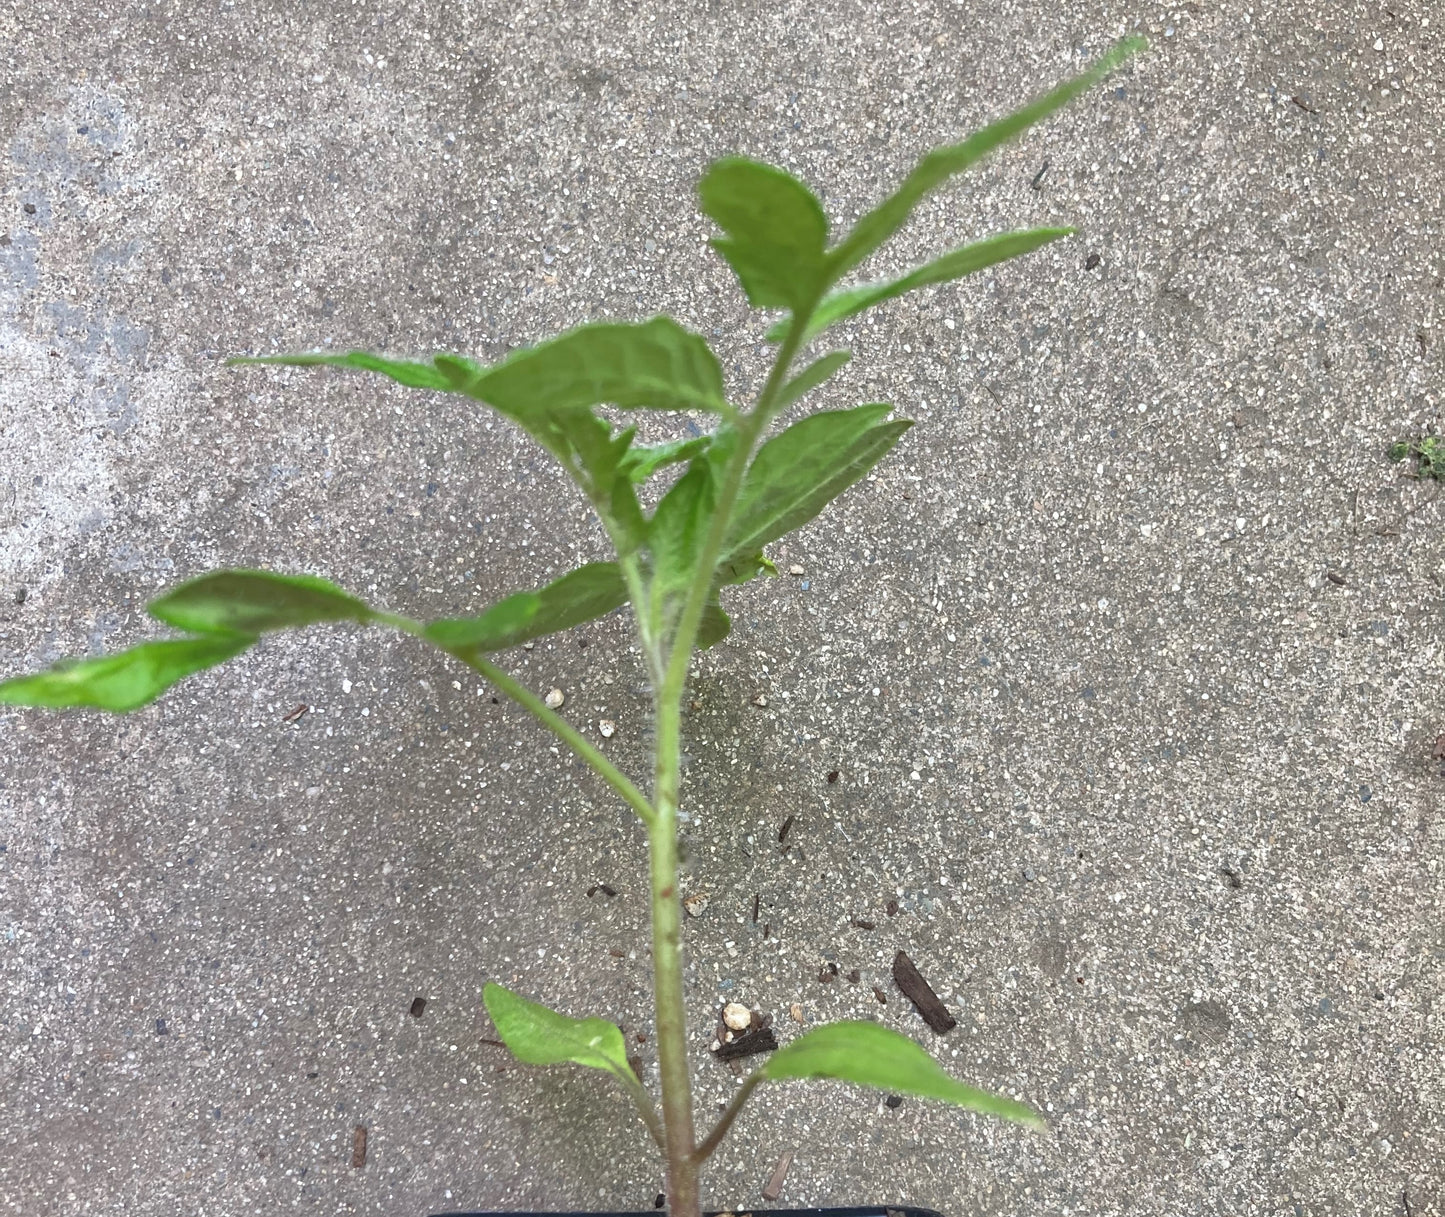 Heirloom Cherokee Purple Tomato Non GMO Live Plant